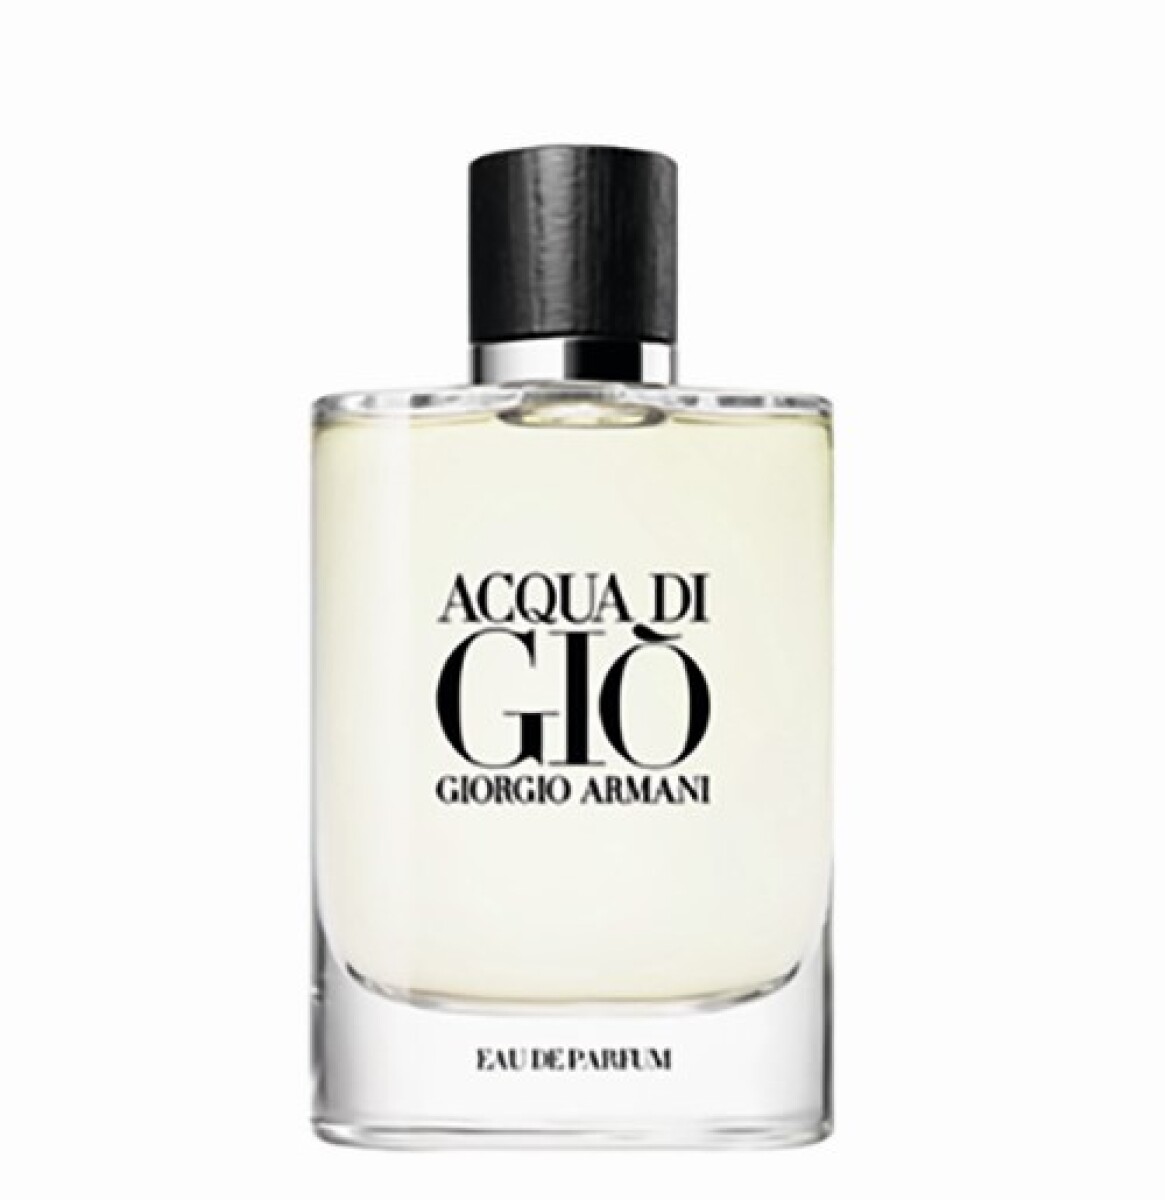 Acqua di Gio eau de parfum Giorgio Armani - 75 ml 